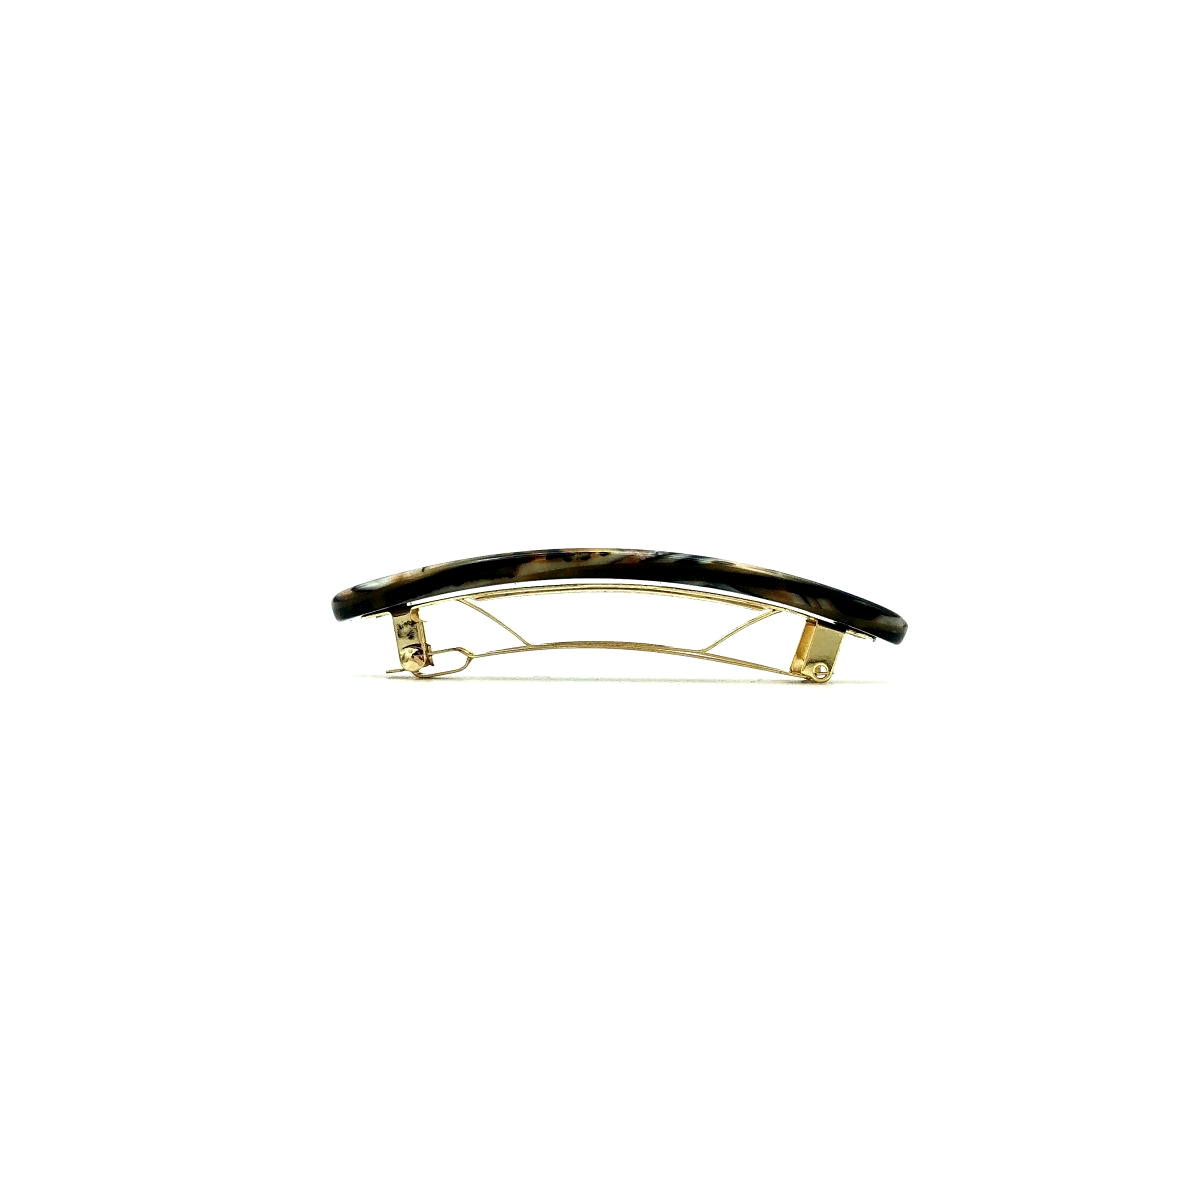 Haarspange gold/schwarz - klein, paralleloval - 7,7 cm